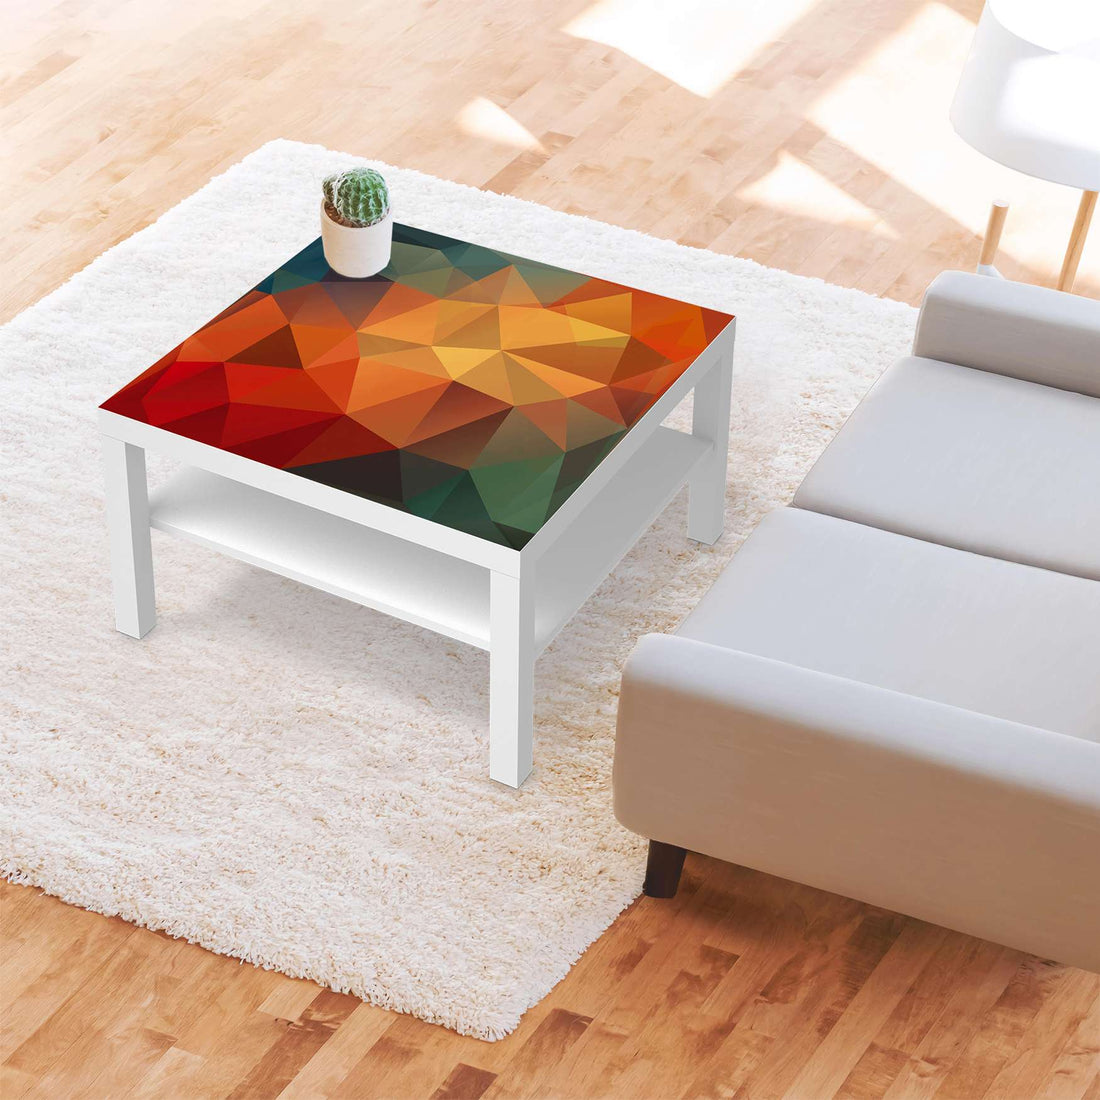 Selbstklebende Folie Polygon - IKEA Lack Tisch 78x78 cm - Wohnzimmer